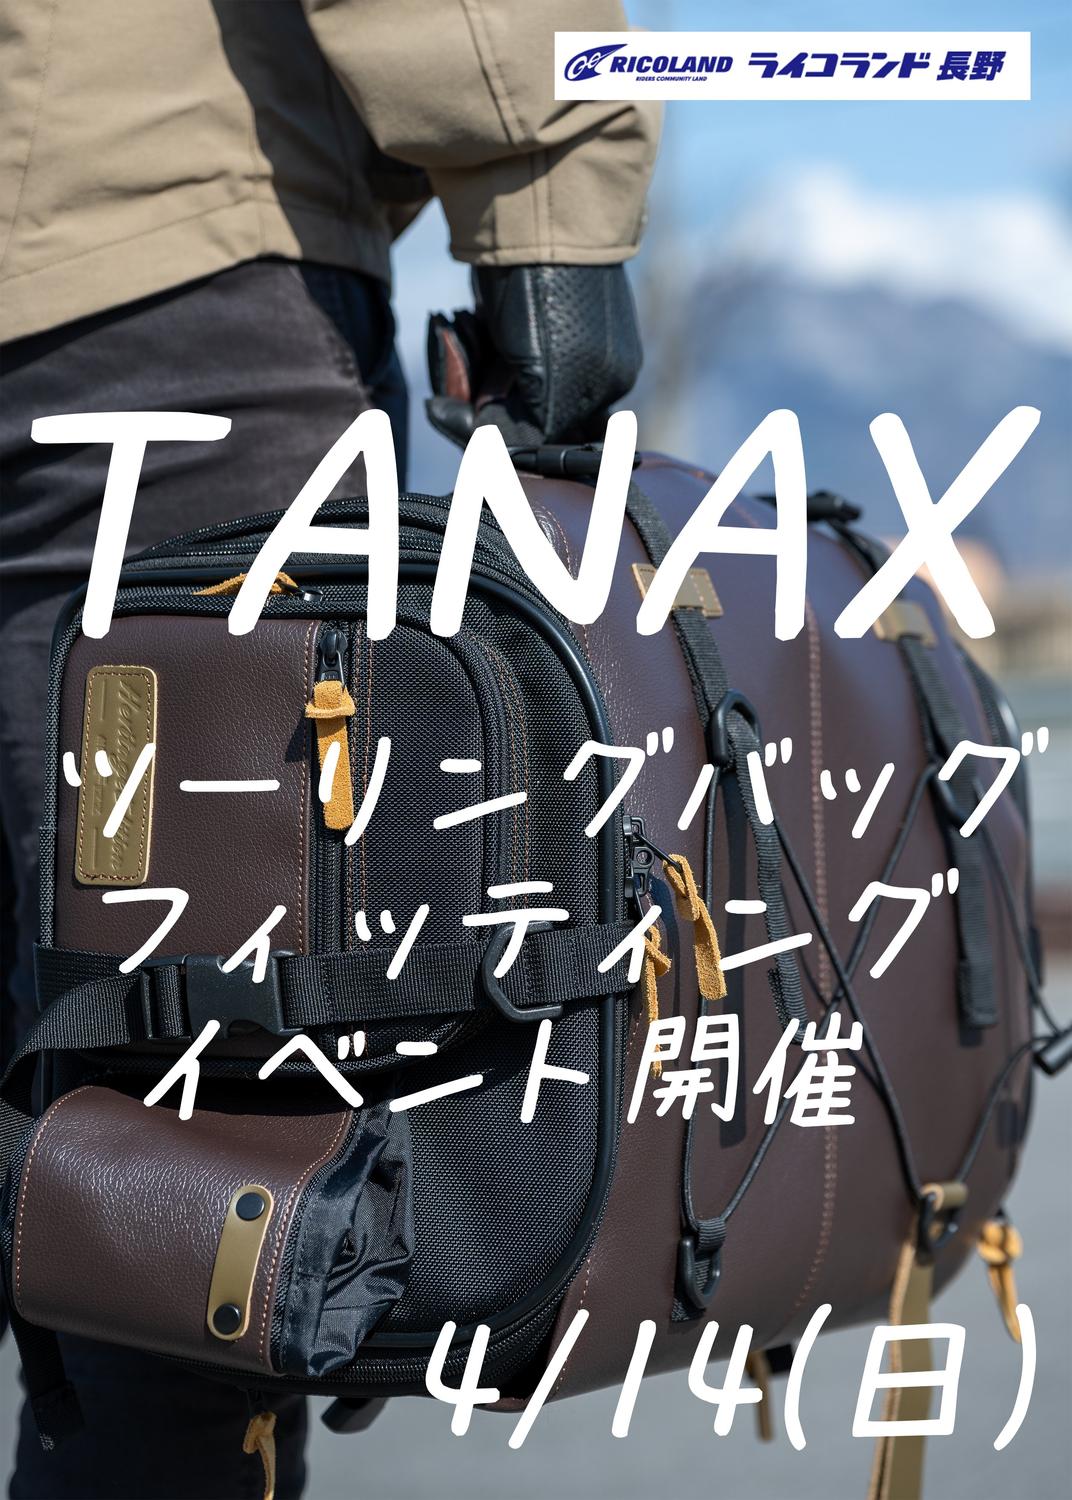 TANAX.jpg